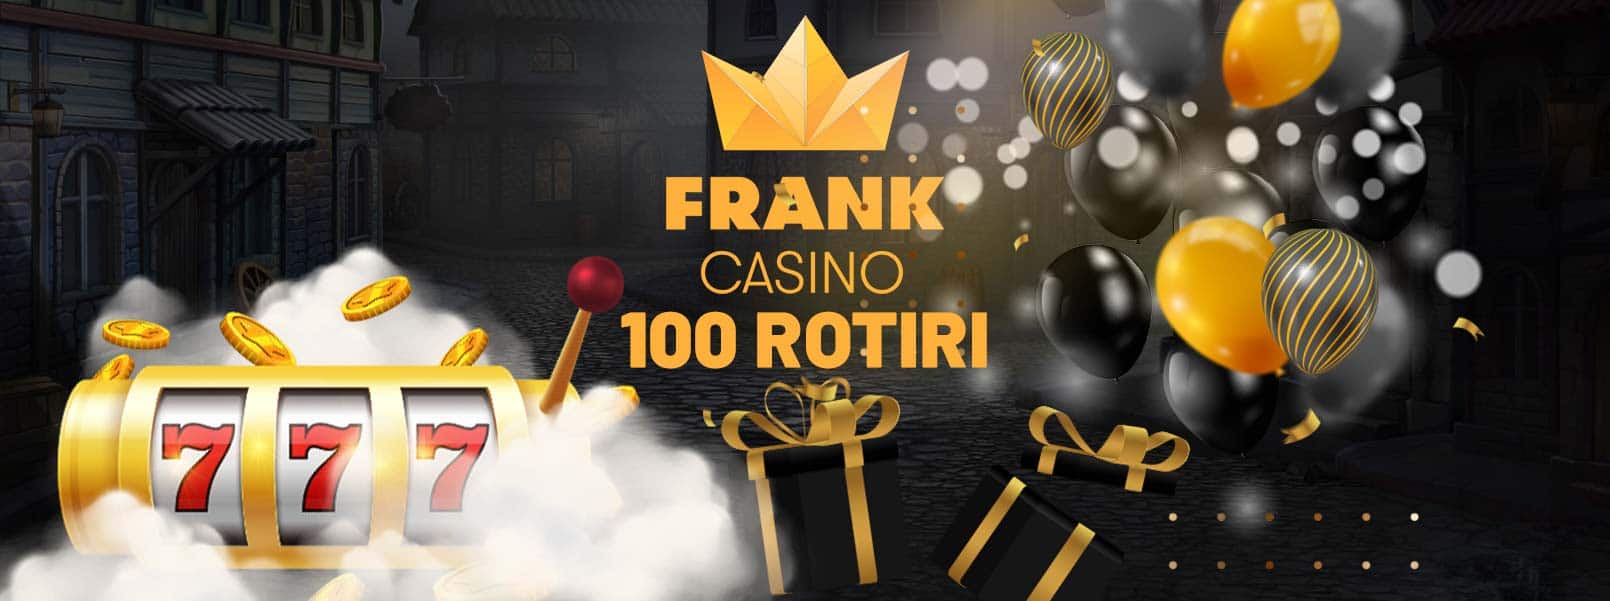 Frank casino bonus fără depunere